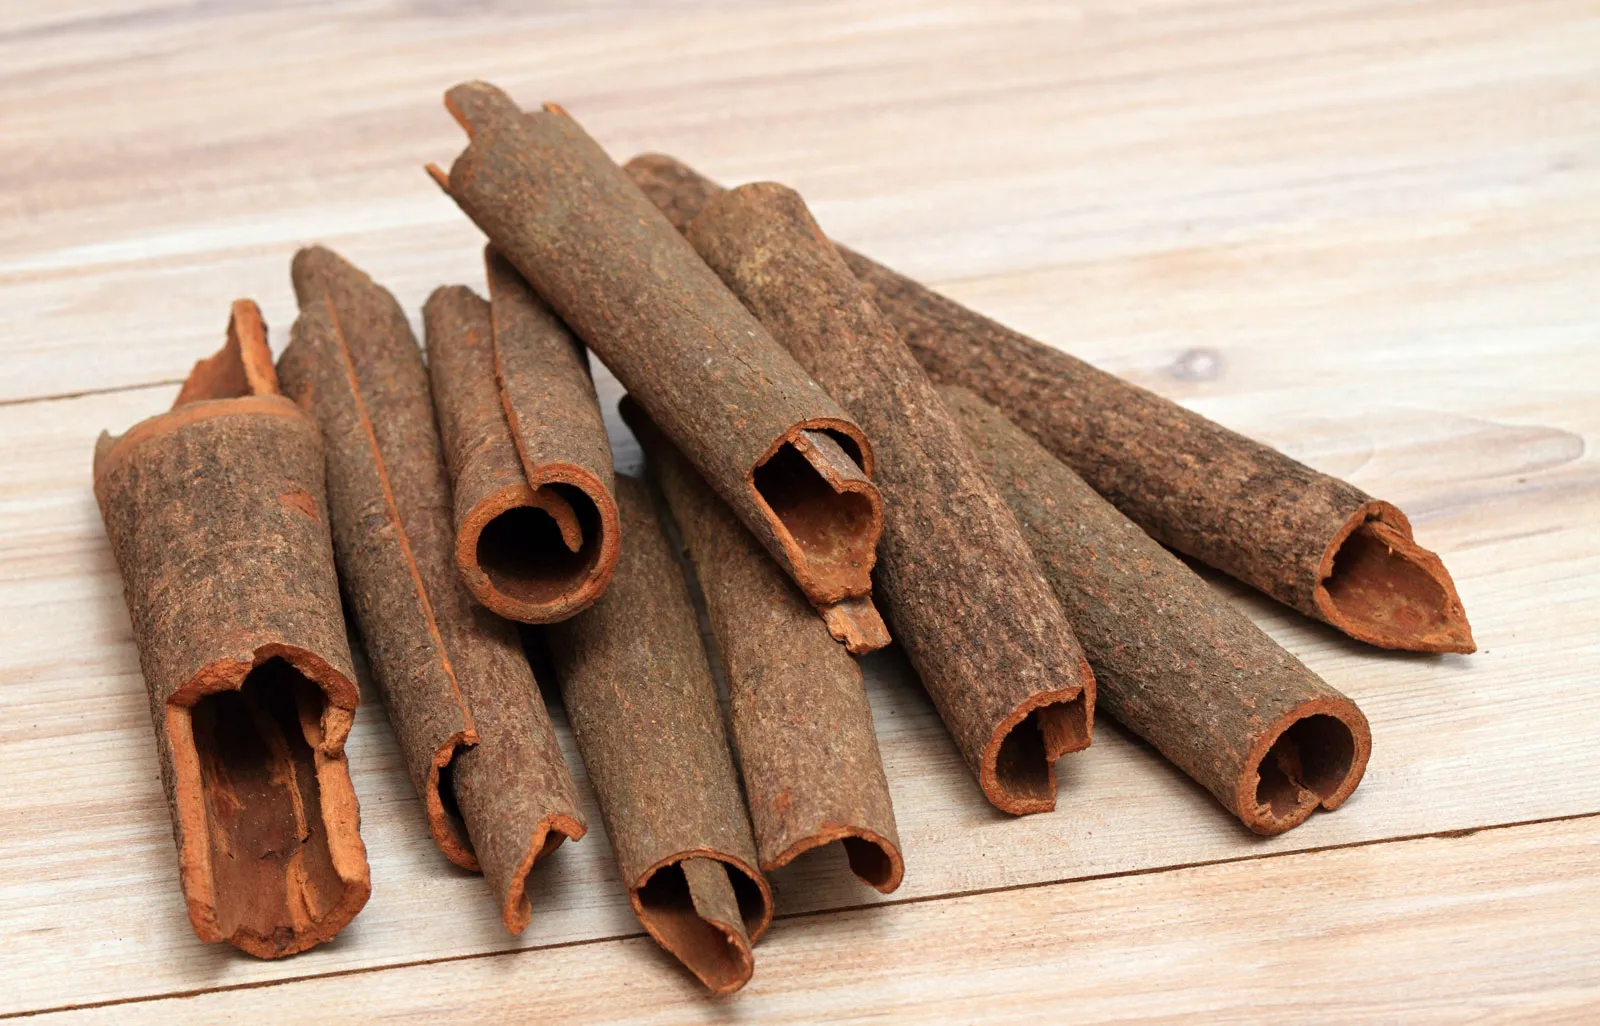 5 Best Benefits Of Cinnamon